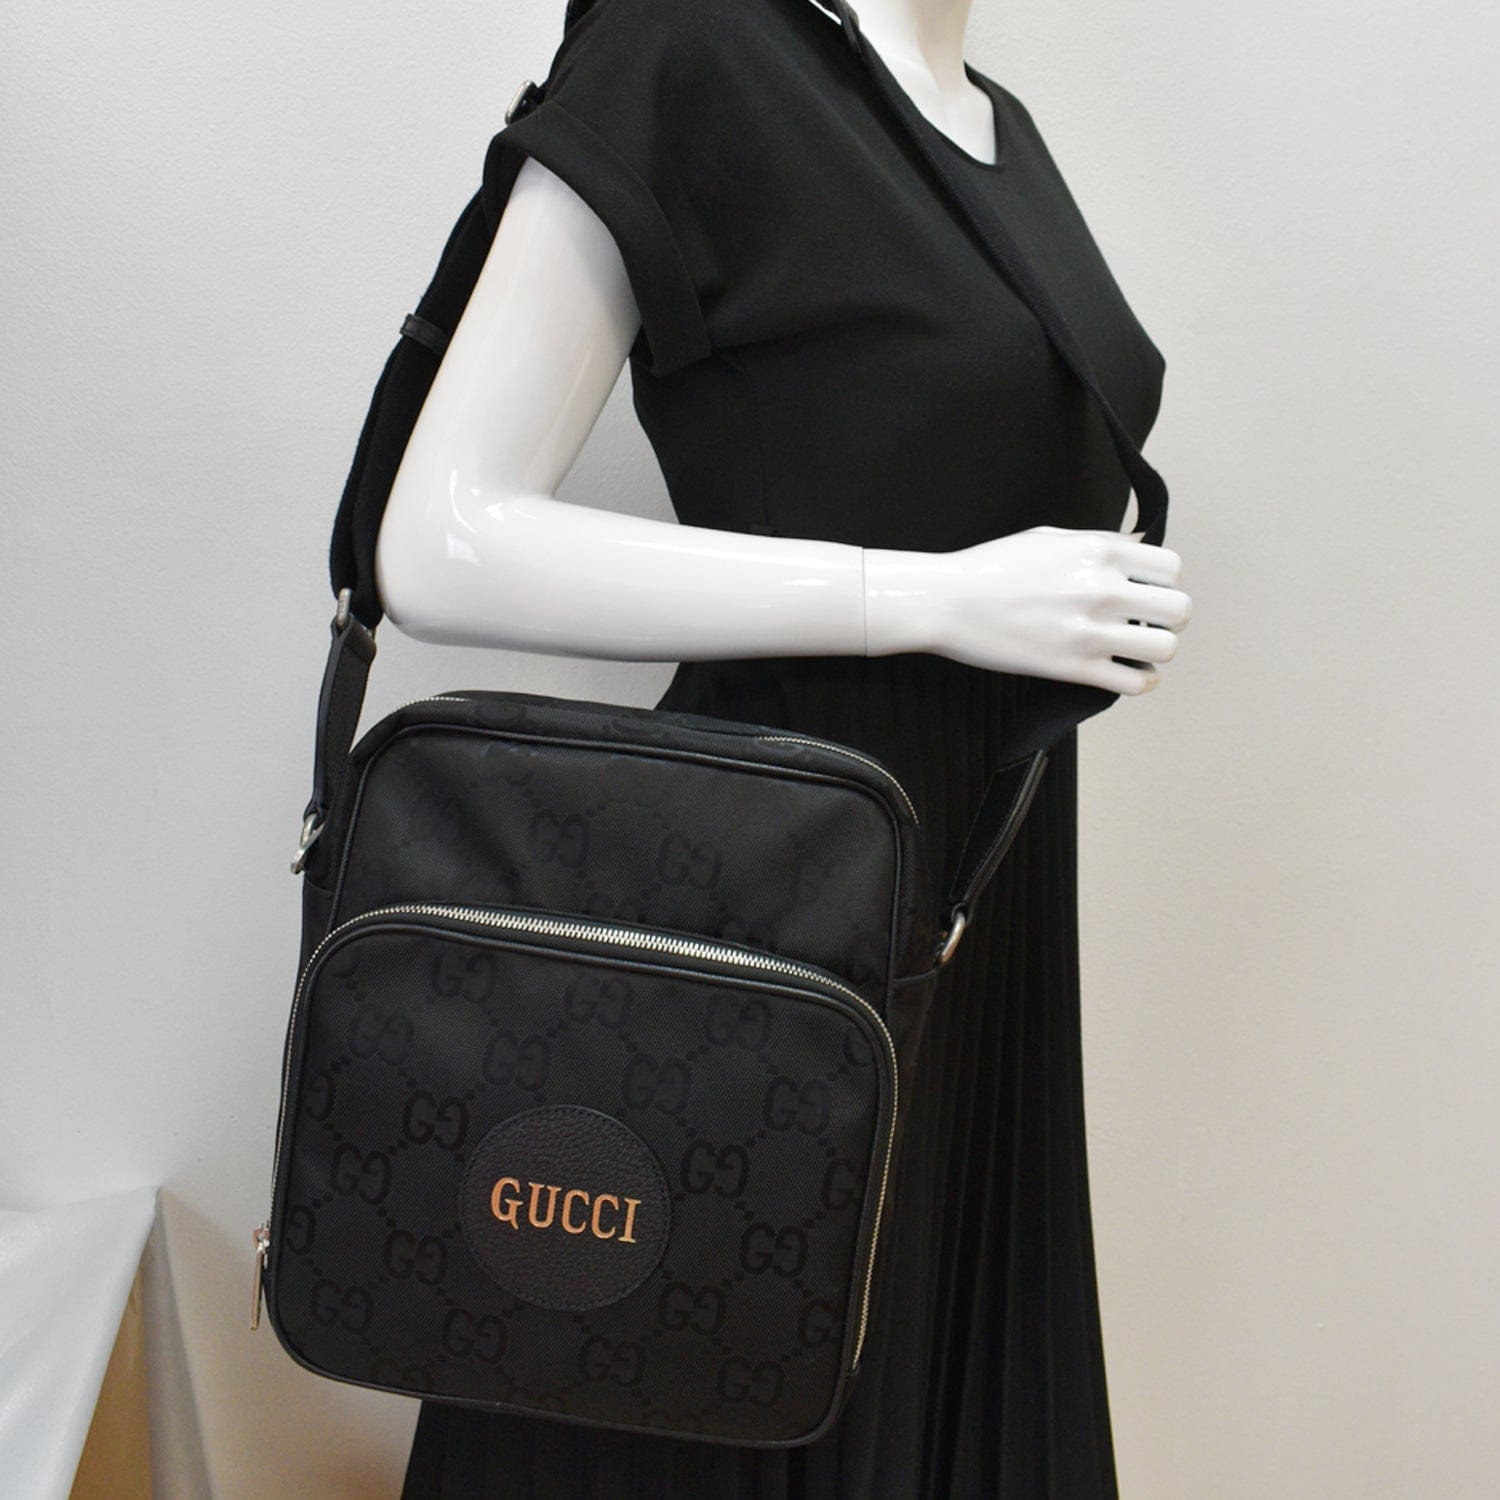 GG Black shoulder bag